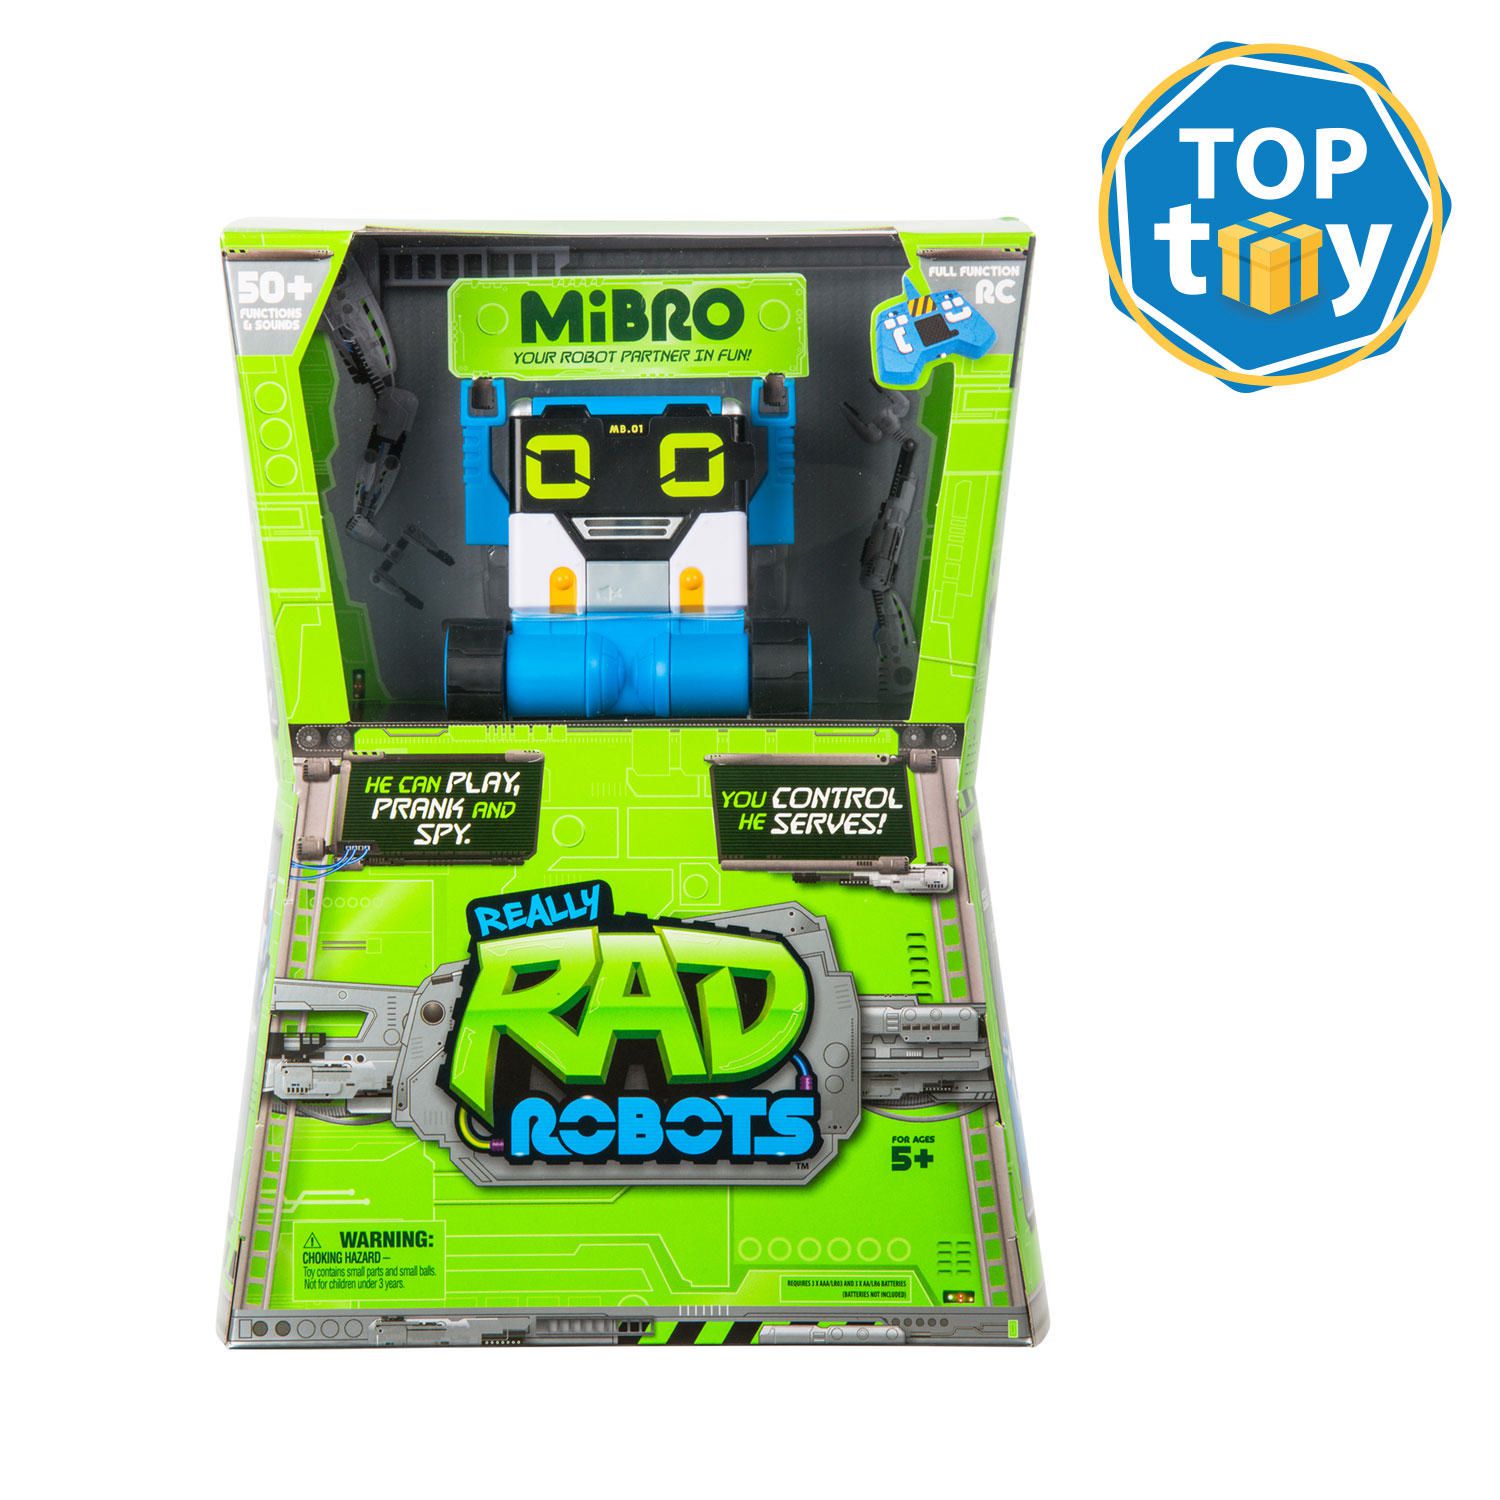 Supabad Factory Sealed New In Box Really Rad Robots Mibro 